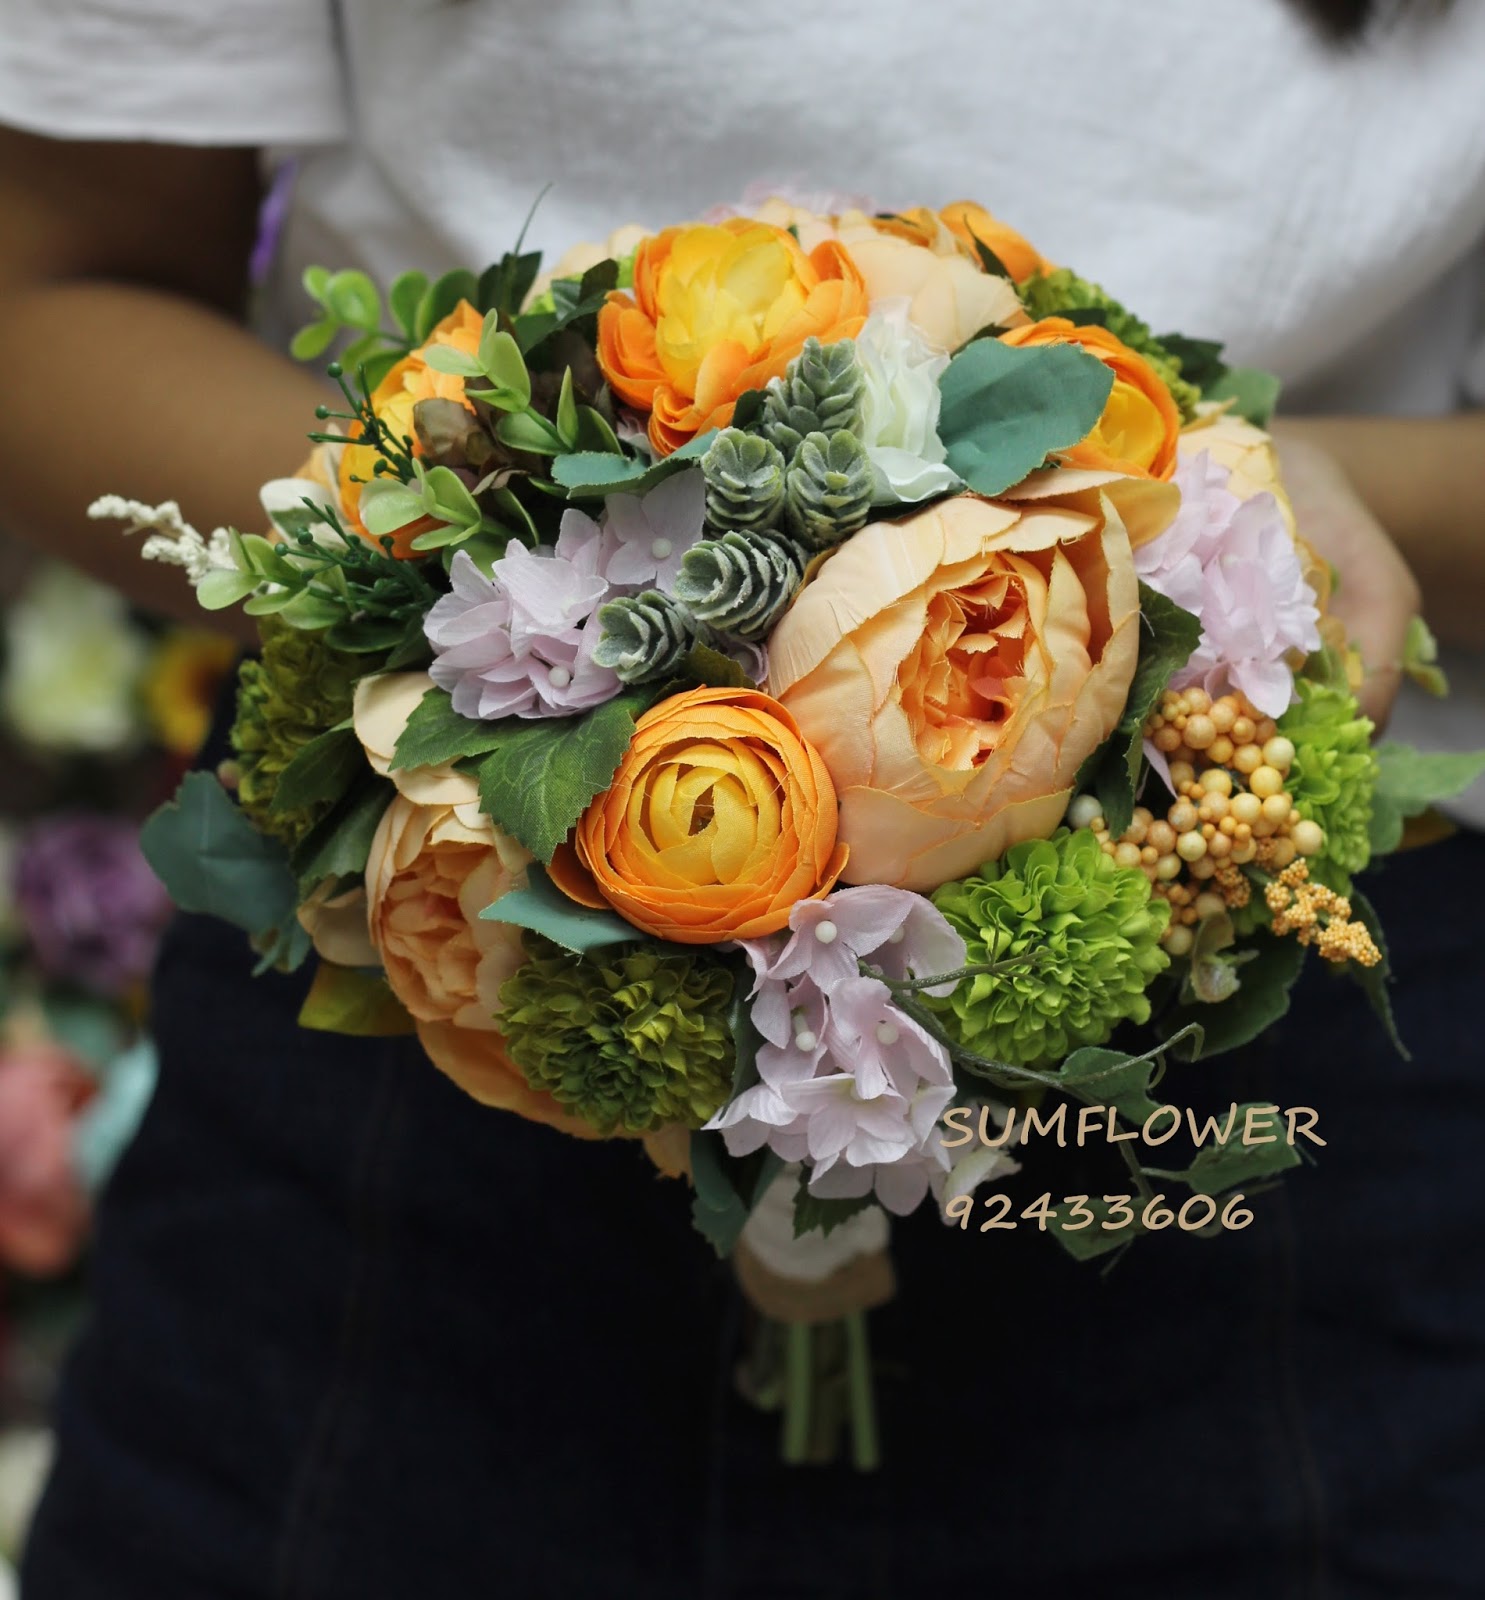 花店 Sumflowershop: 玫瑰繡球花球 SFB 001絲花花球 SILK FLOWER bridal bouquet silk ...